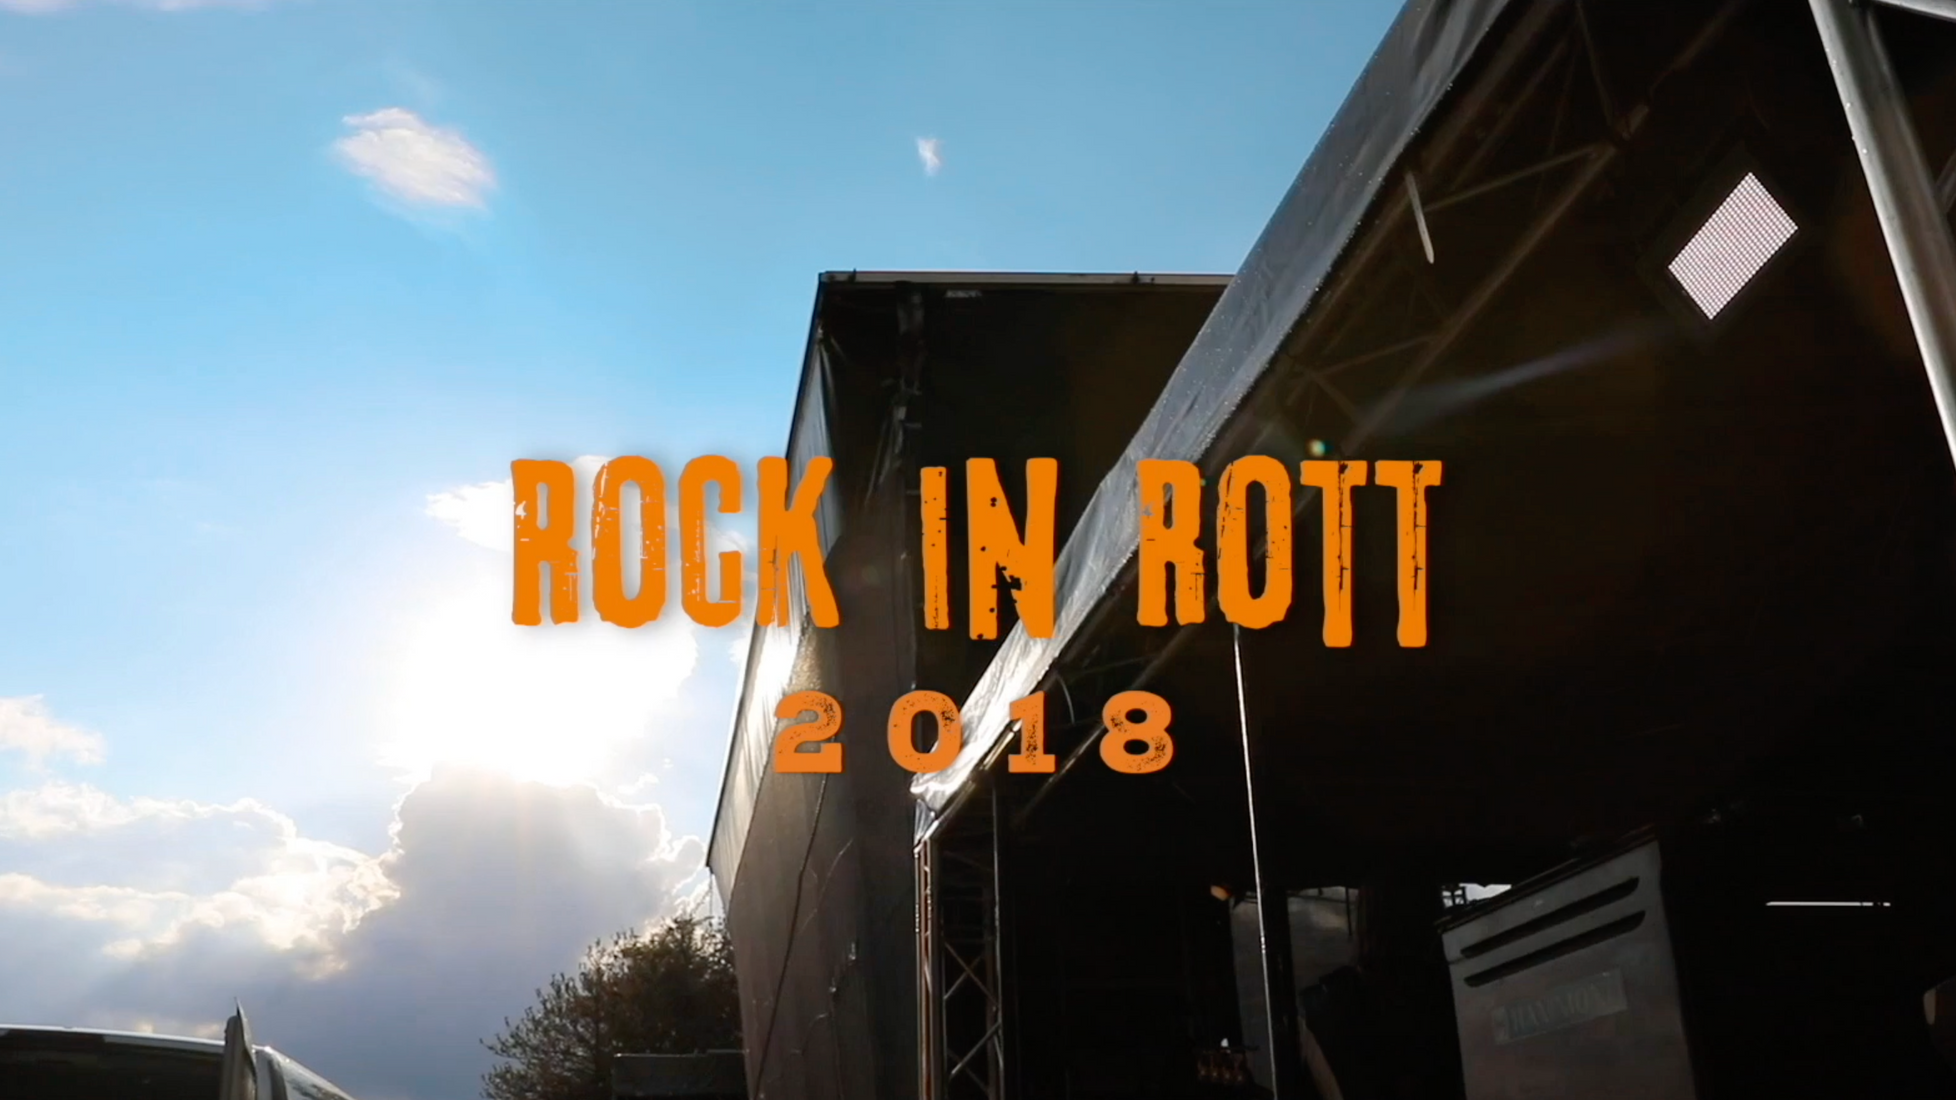 ROCK IN ROTT 2018